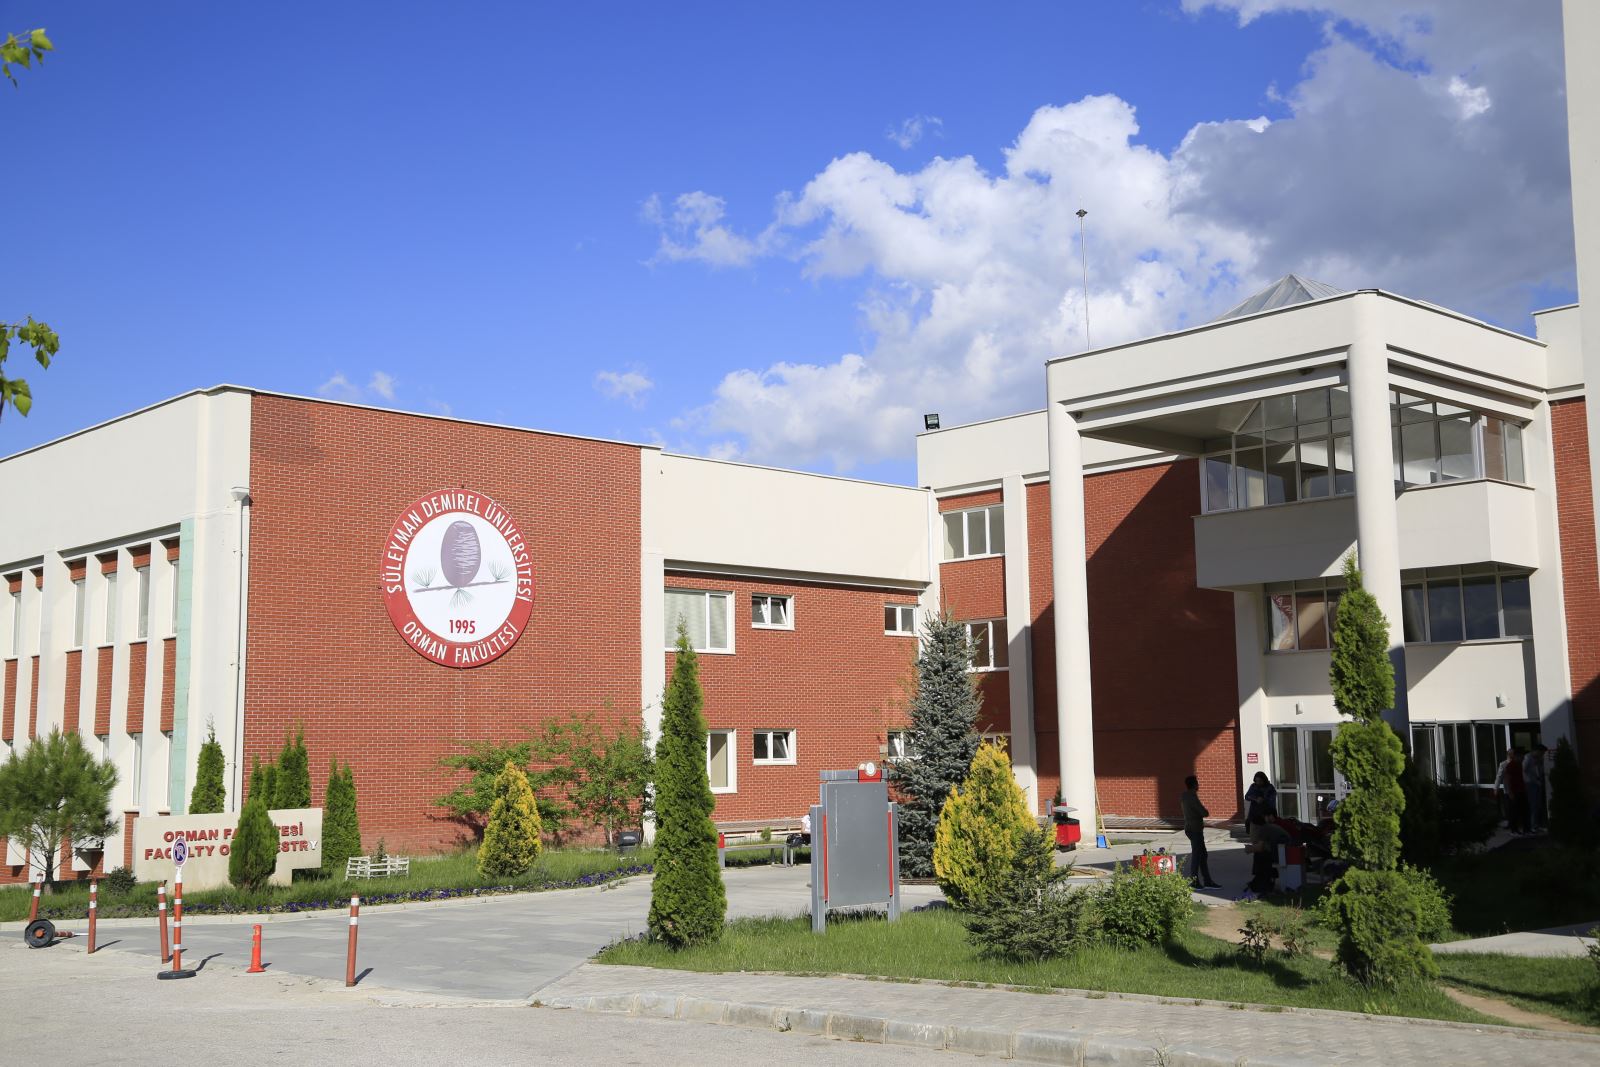 Süleyman Demirel Üniversitesi personel alacak